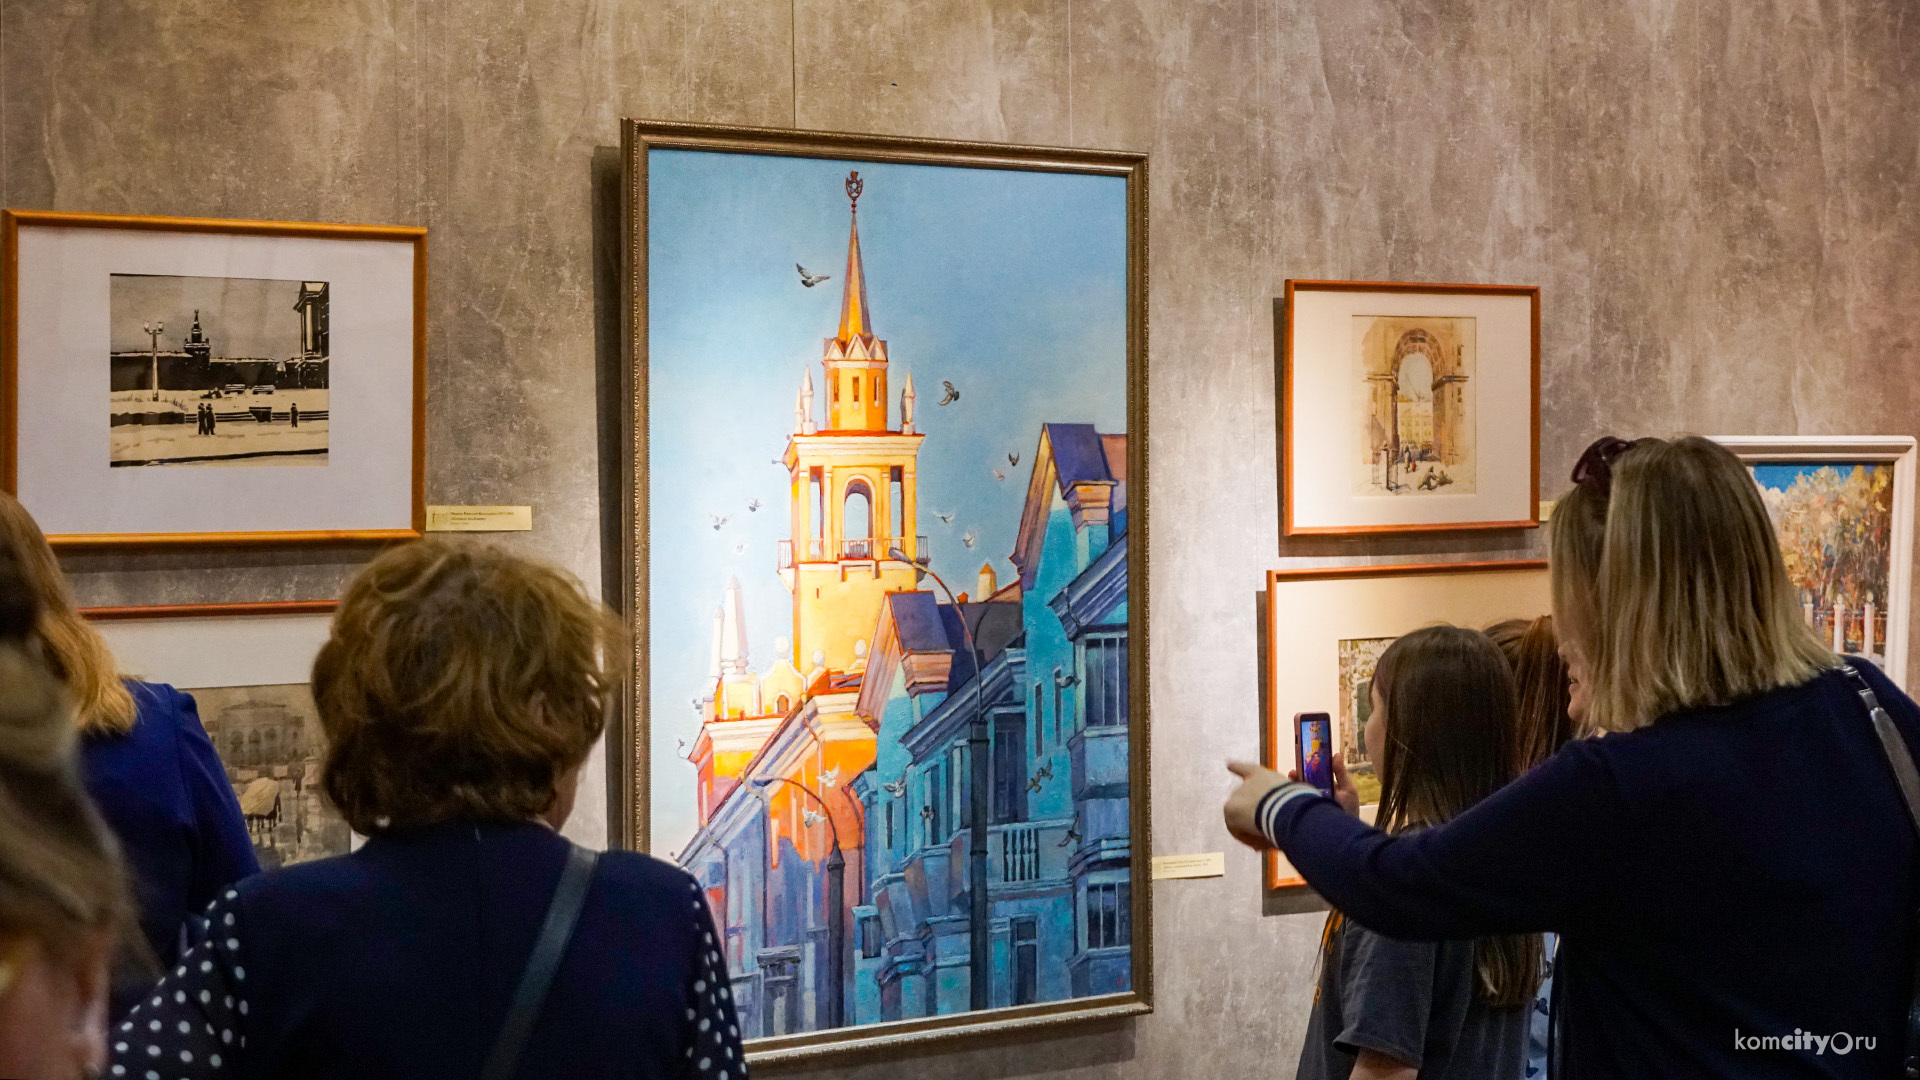 Комсомольск глазами художников представлен на новой выставке в Художественном музее